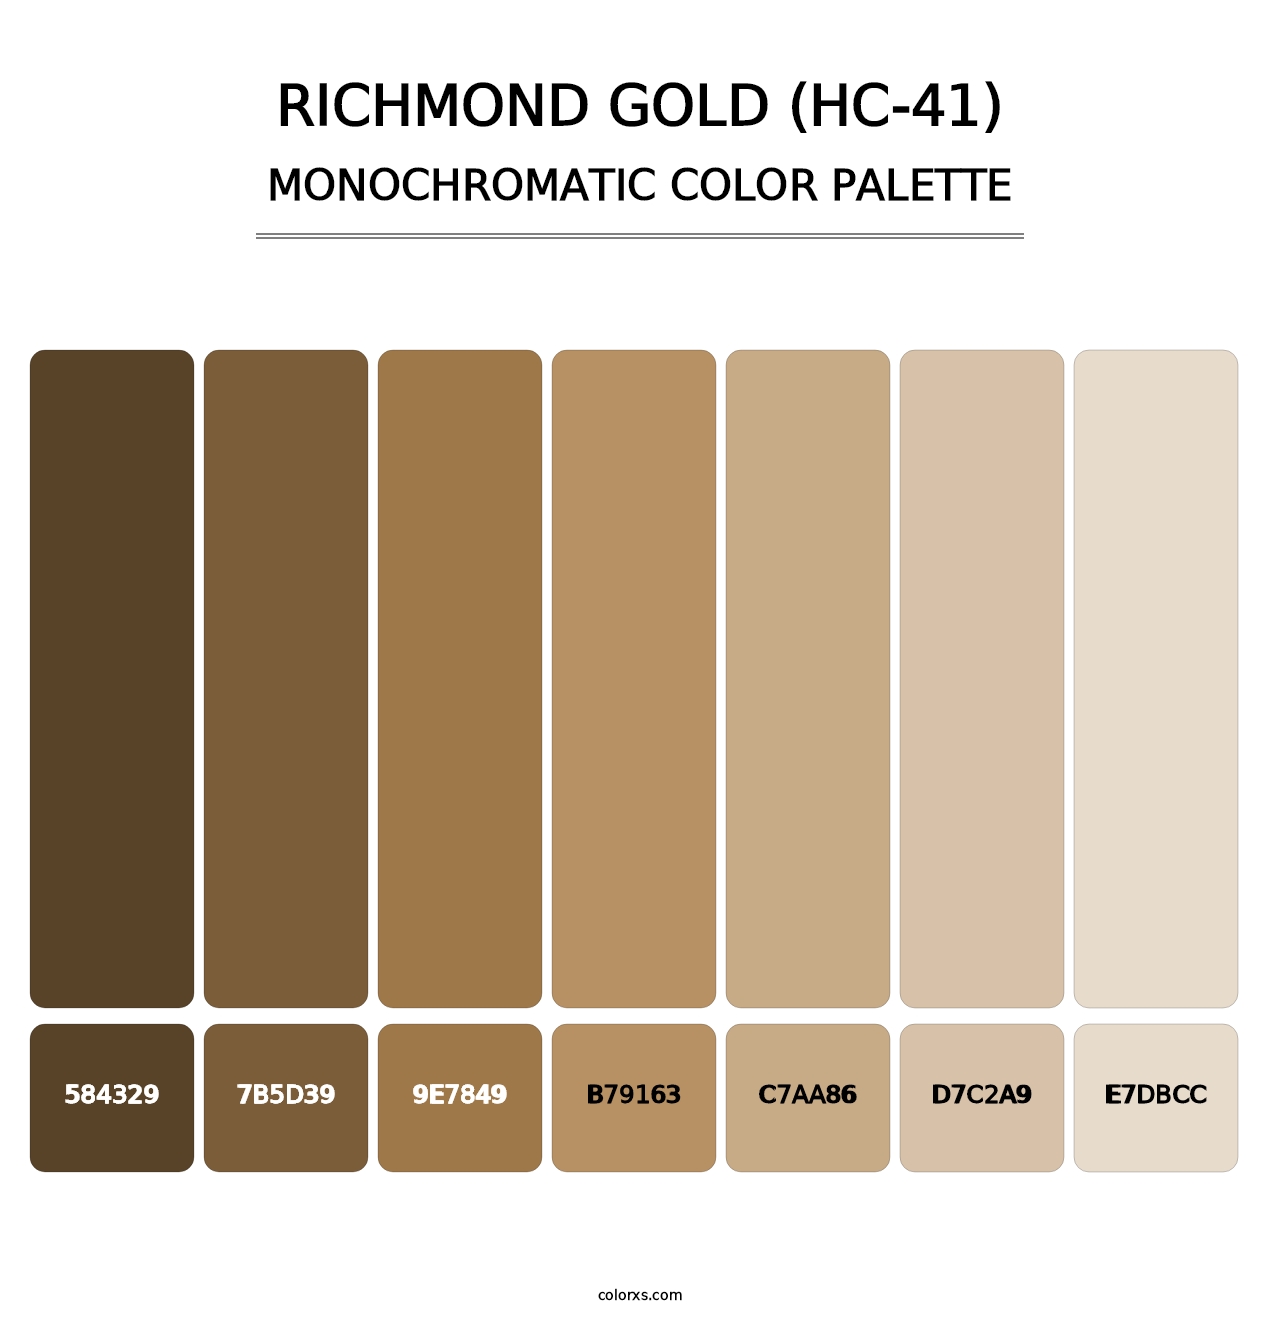 Richmond Gold (HC-41) - Monochromatic Color Palette